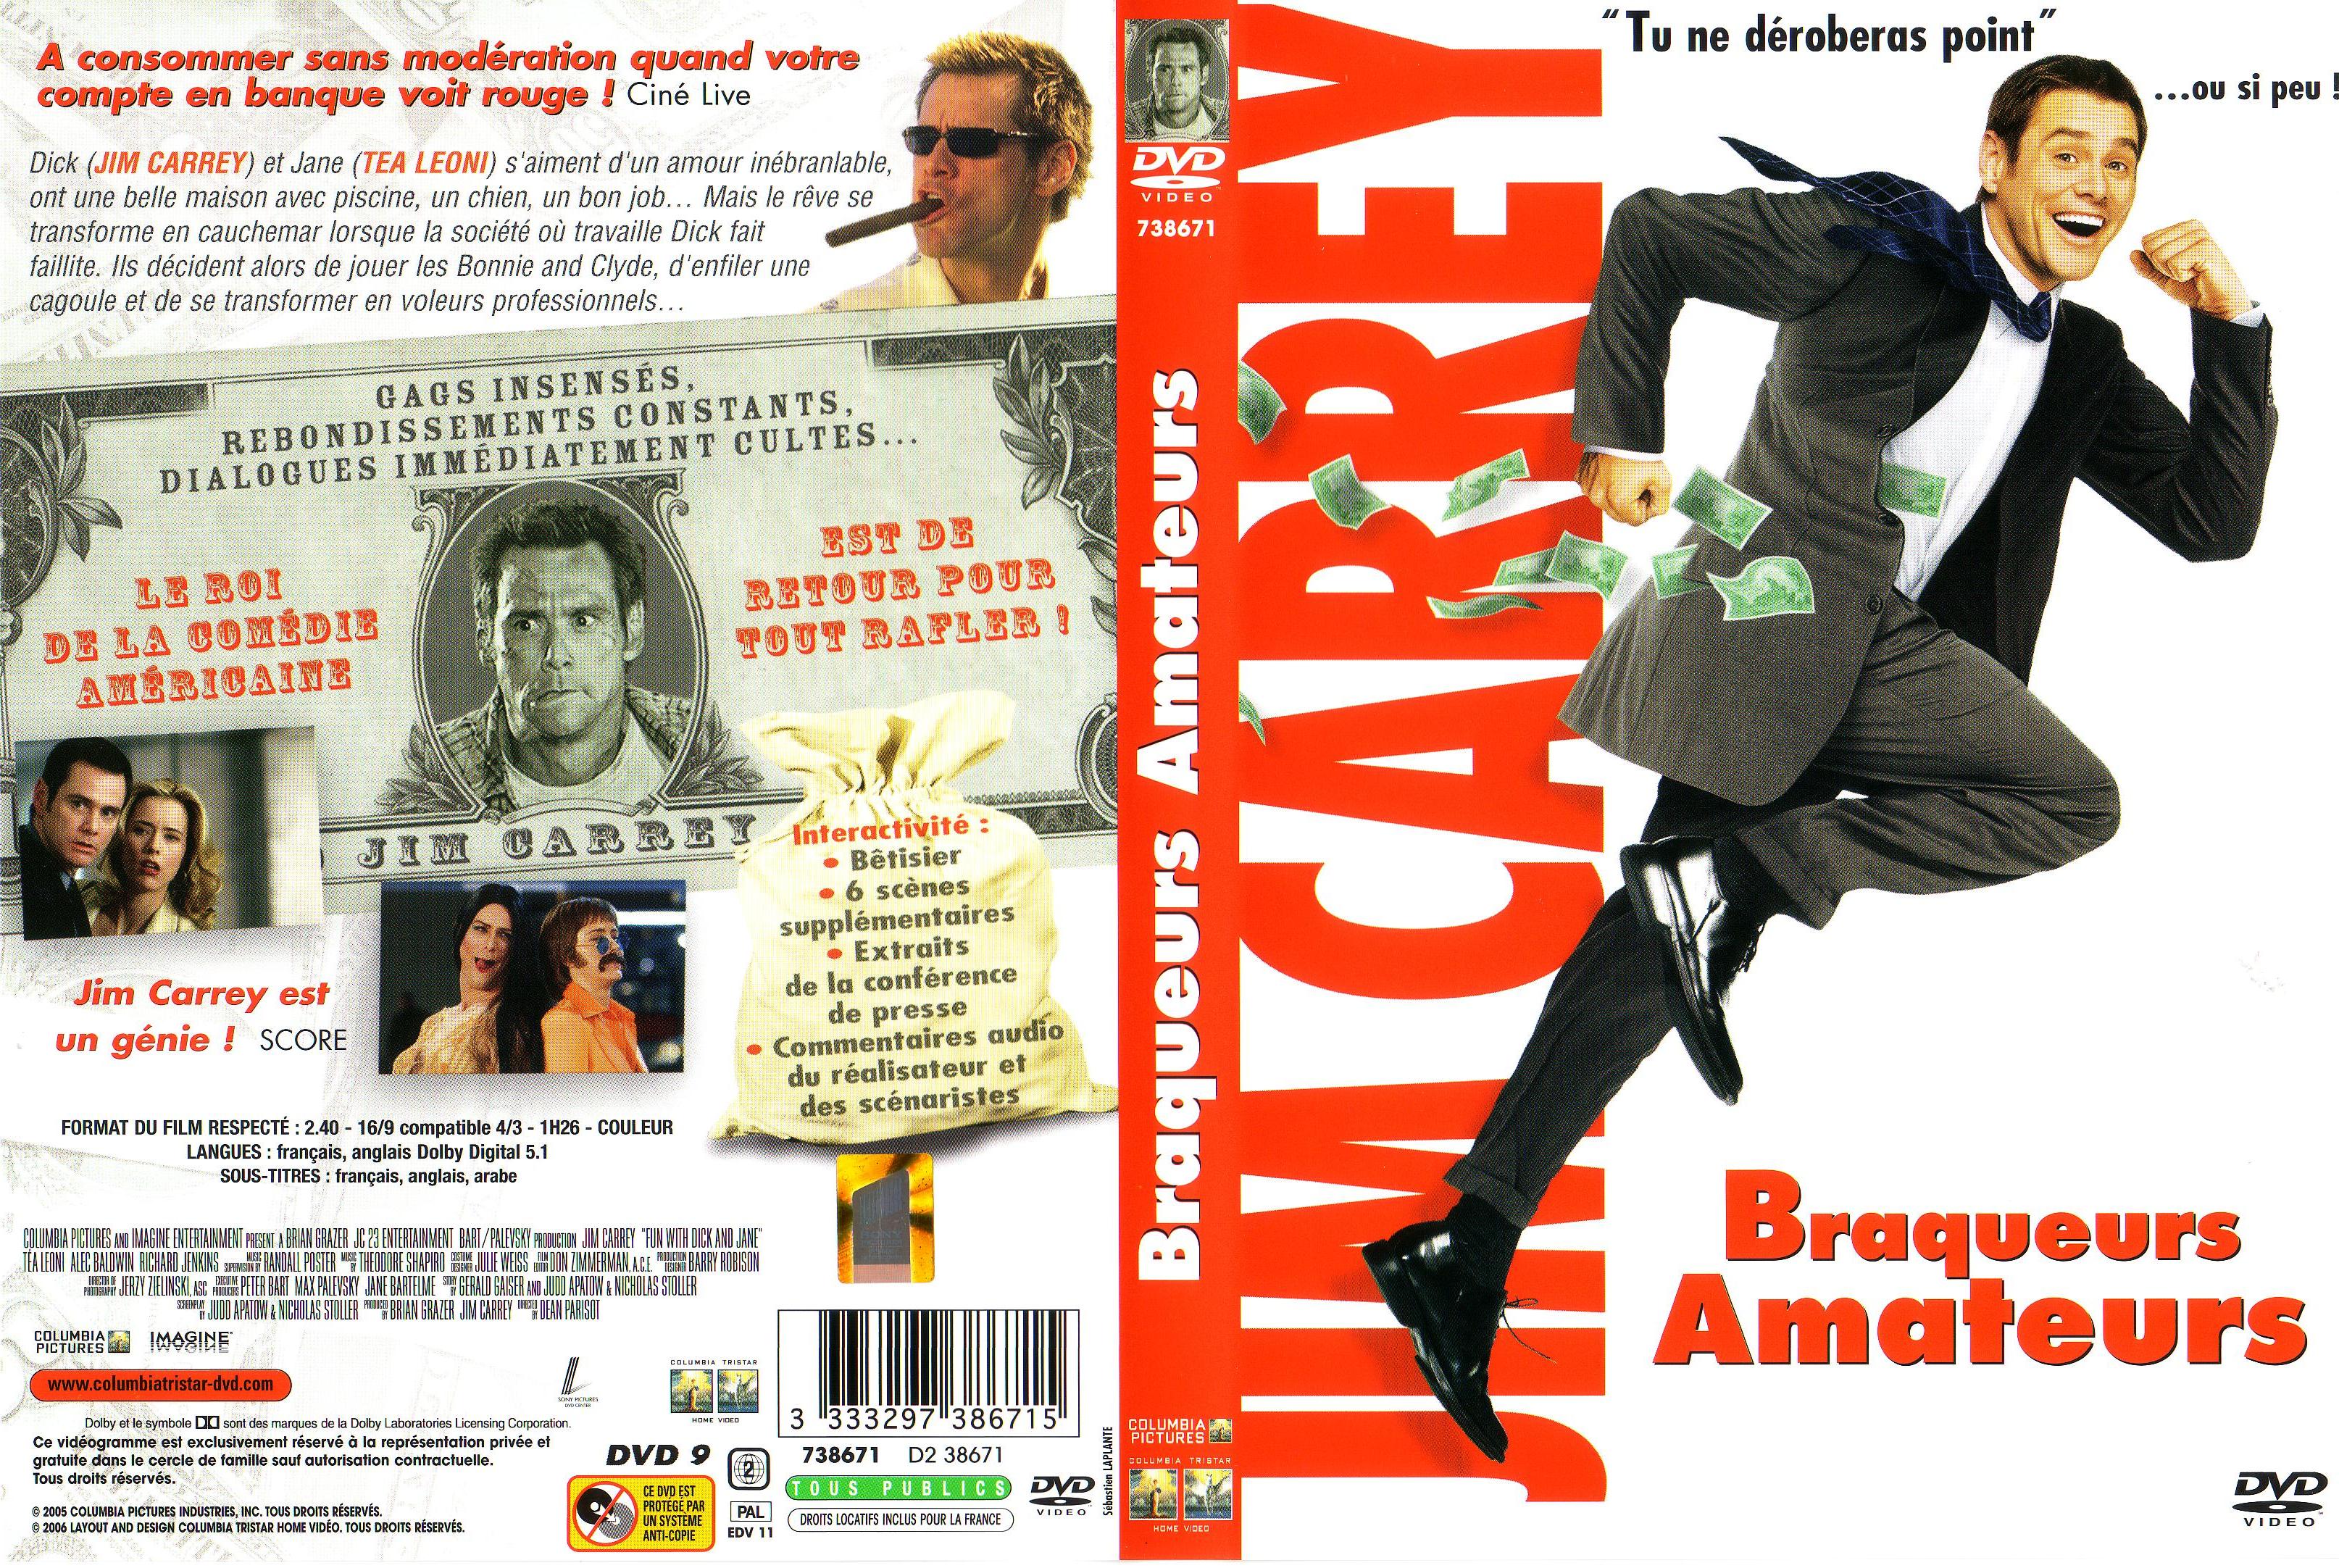 Jaquette DVD de Braqueurs a image